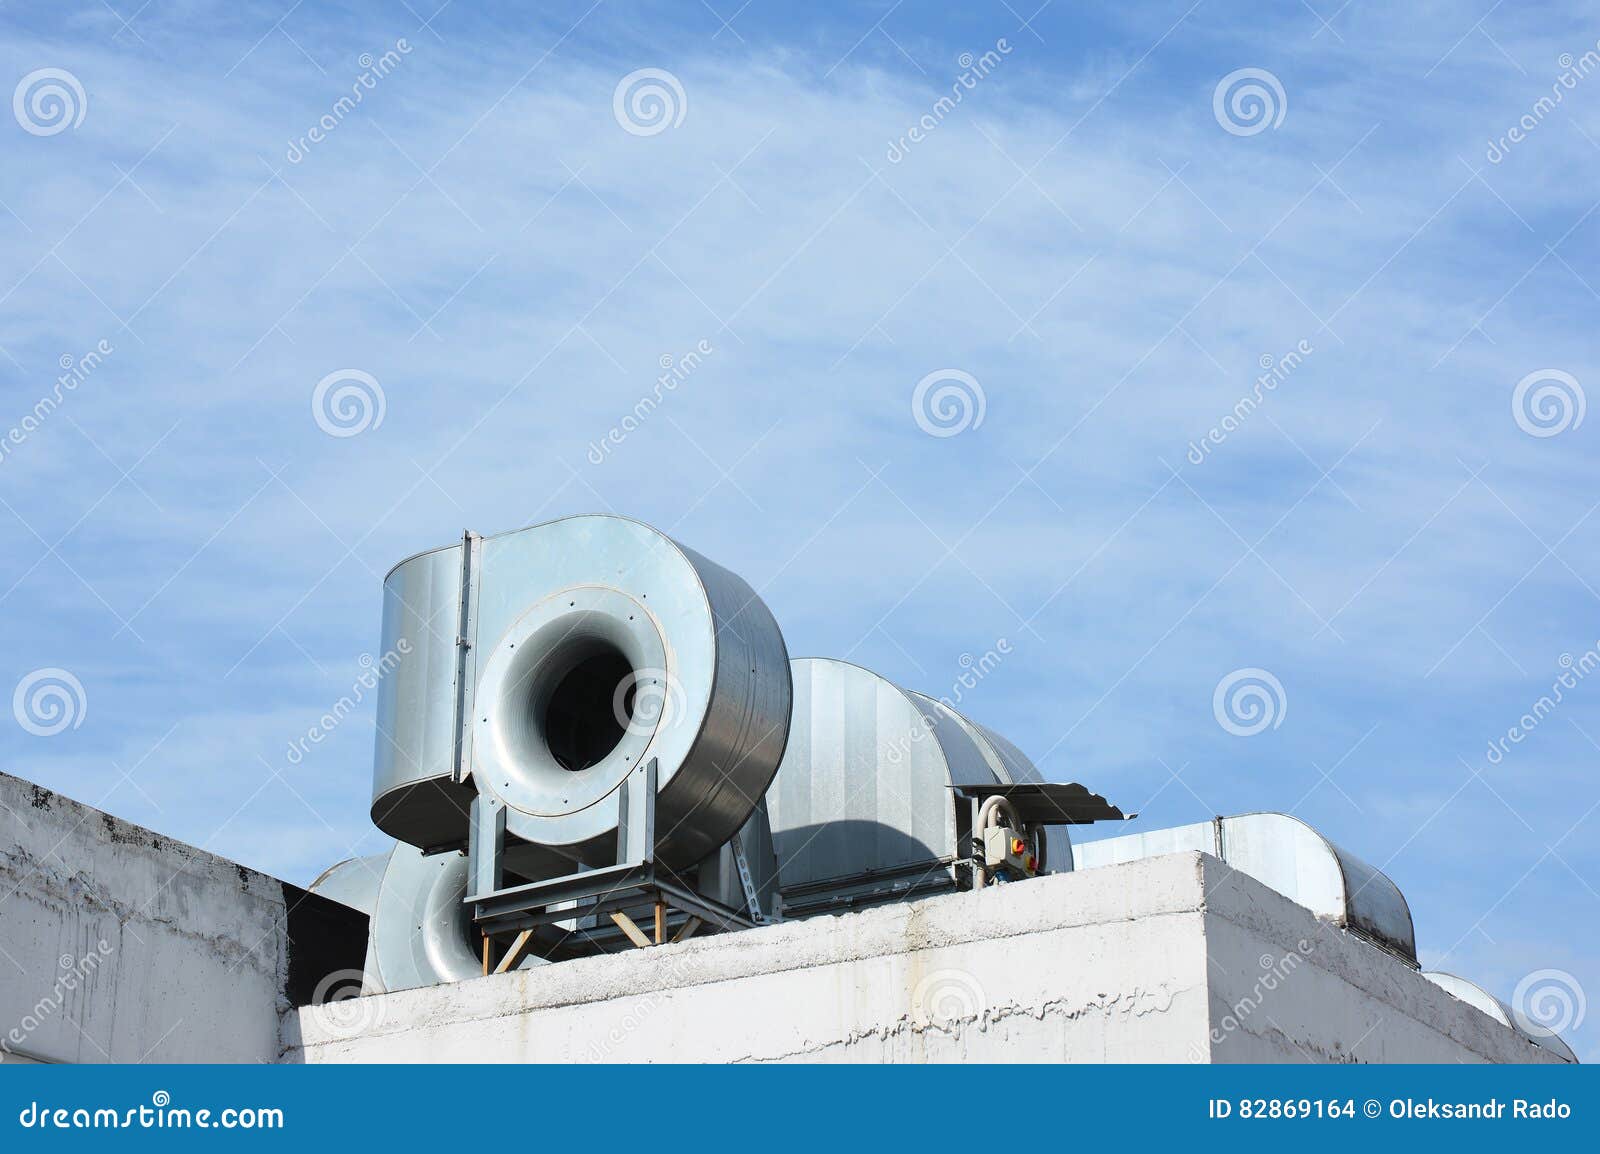 Ventilateur de cheminée  Chauffage, climatisation & aération